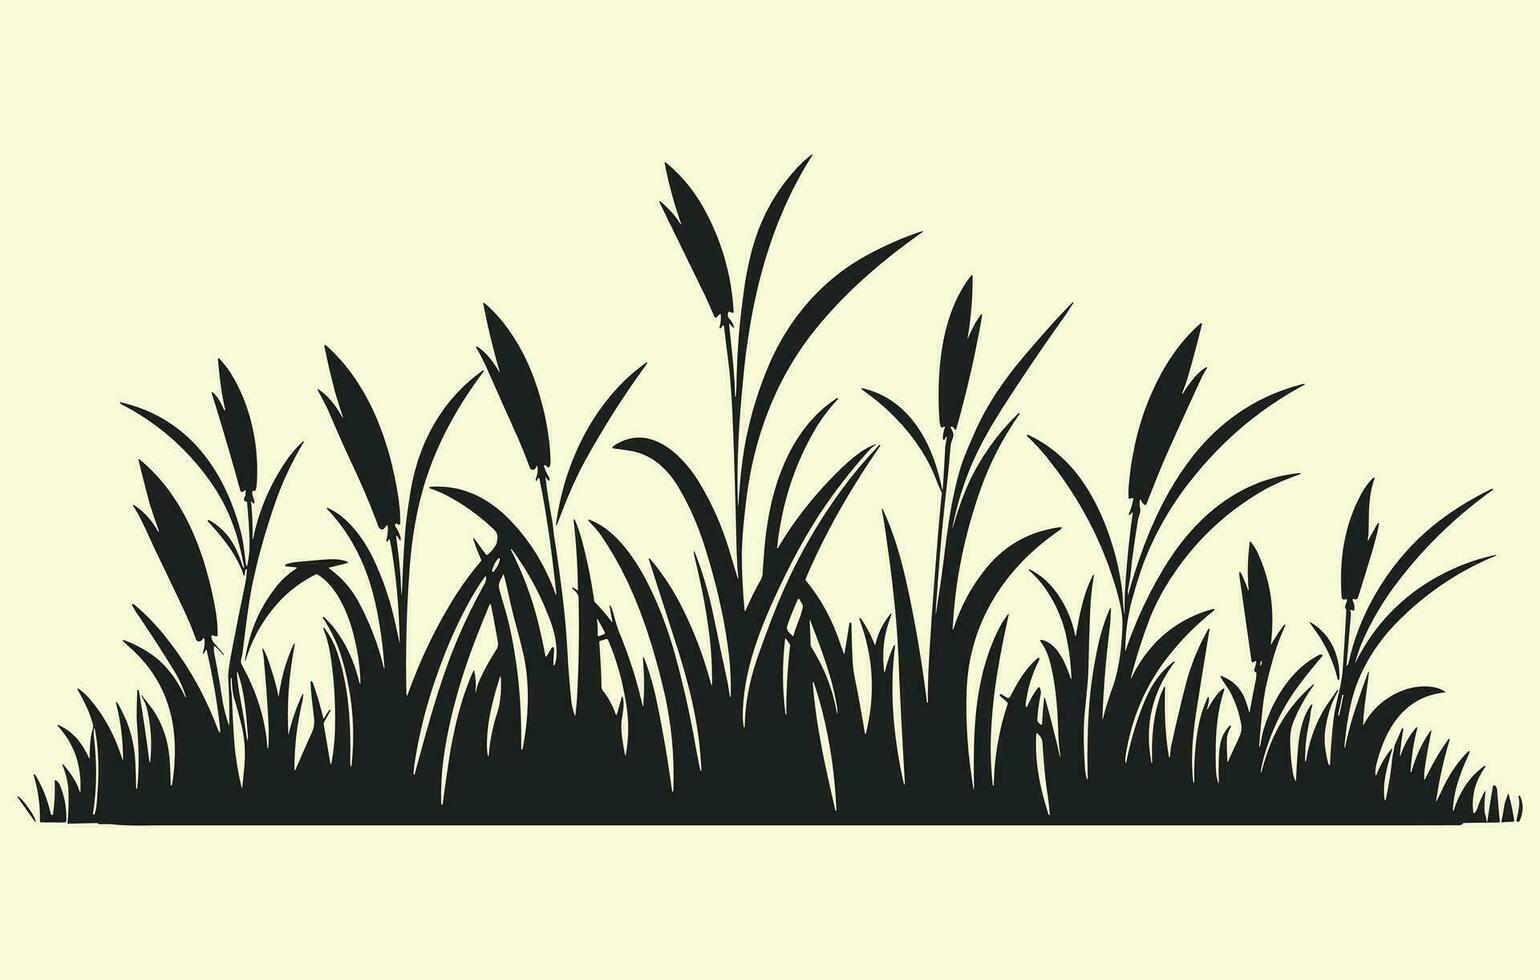 maïs plantage. vector illustratie van zoet maïs ontspruiten in veld-